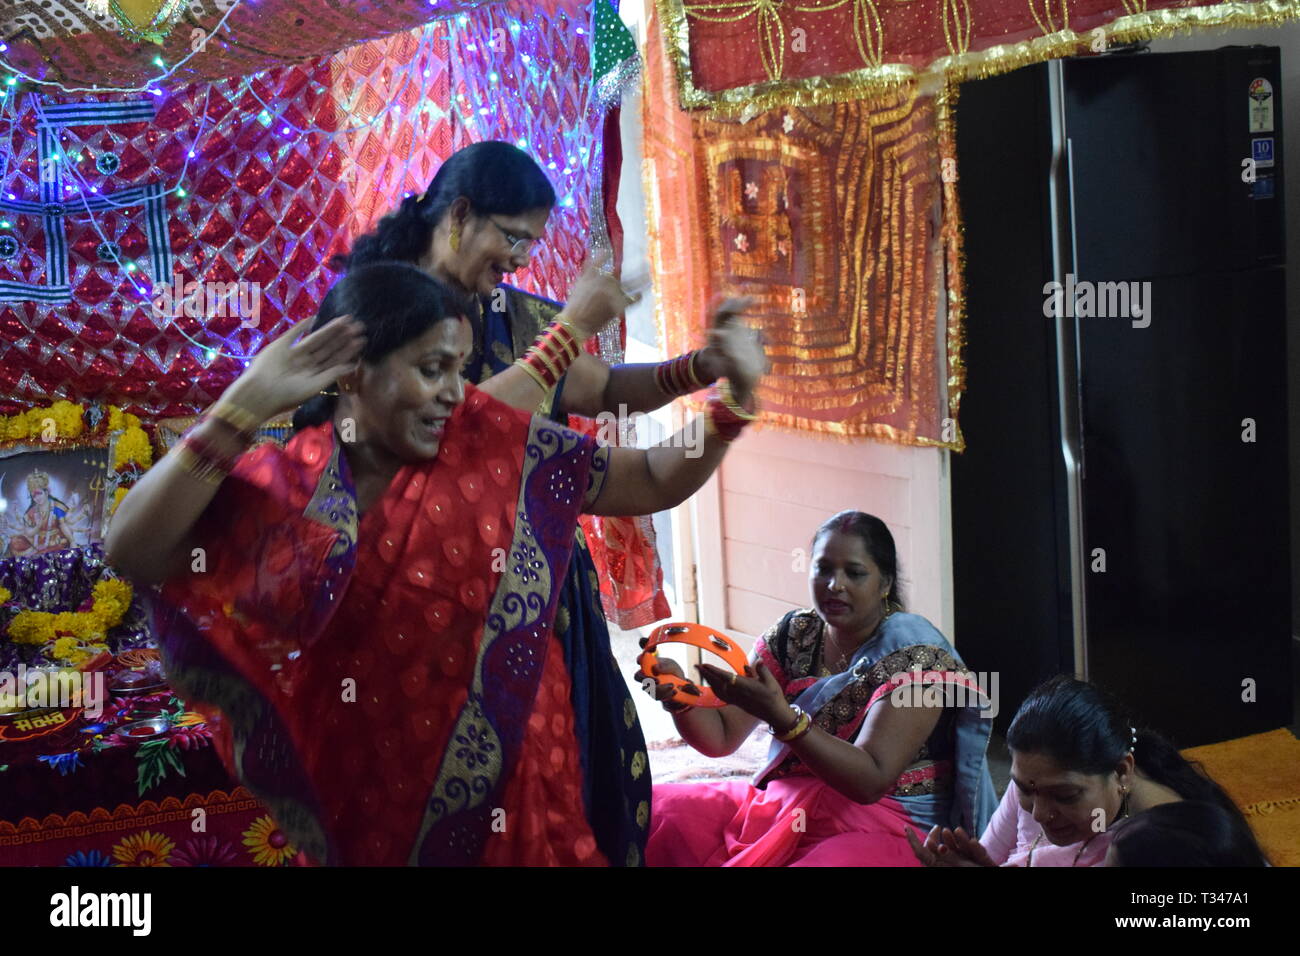 Indien, Asien - 12. Januar 2019: Indische Frauen tanzen in einer Funktion mit dem Gebet zu Gott. Stockfoto